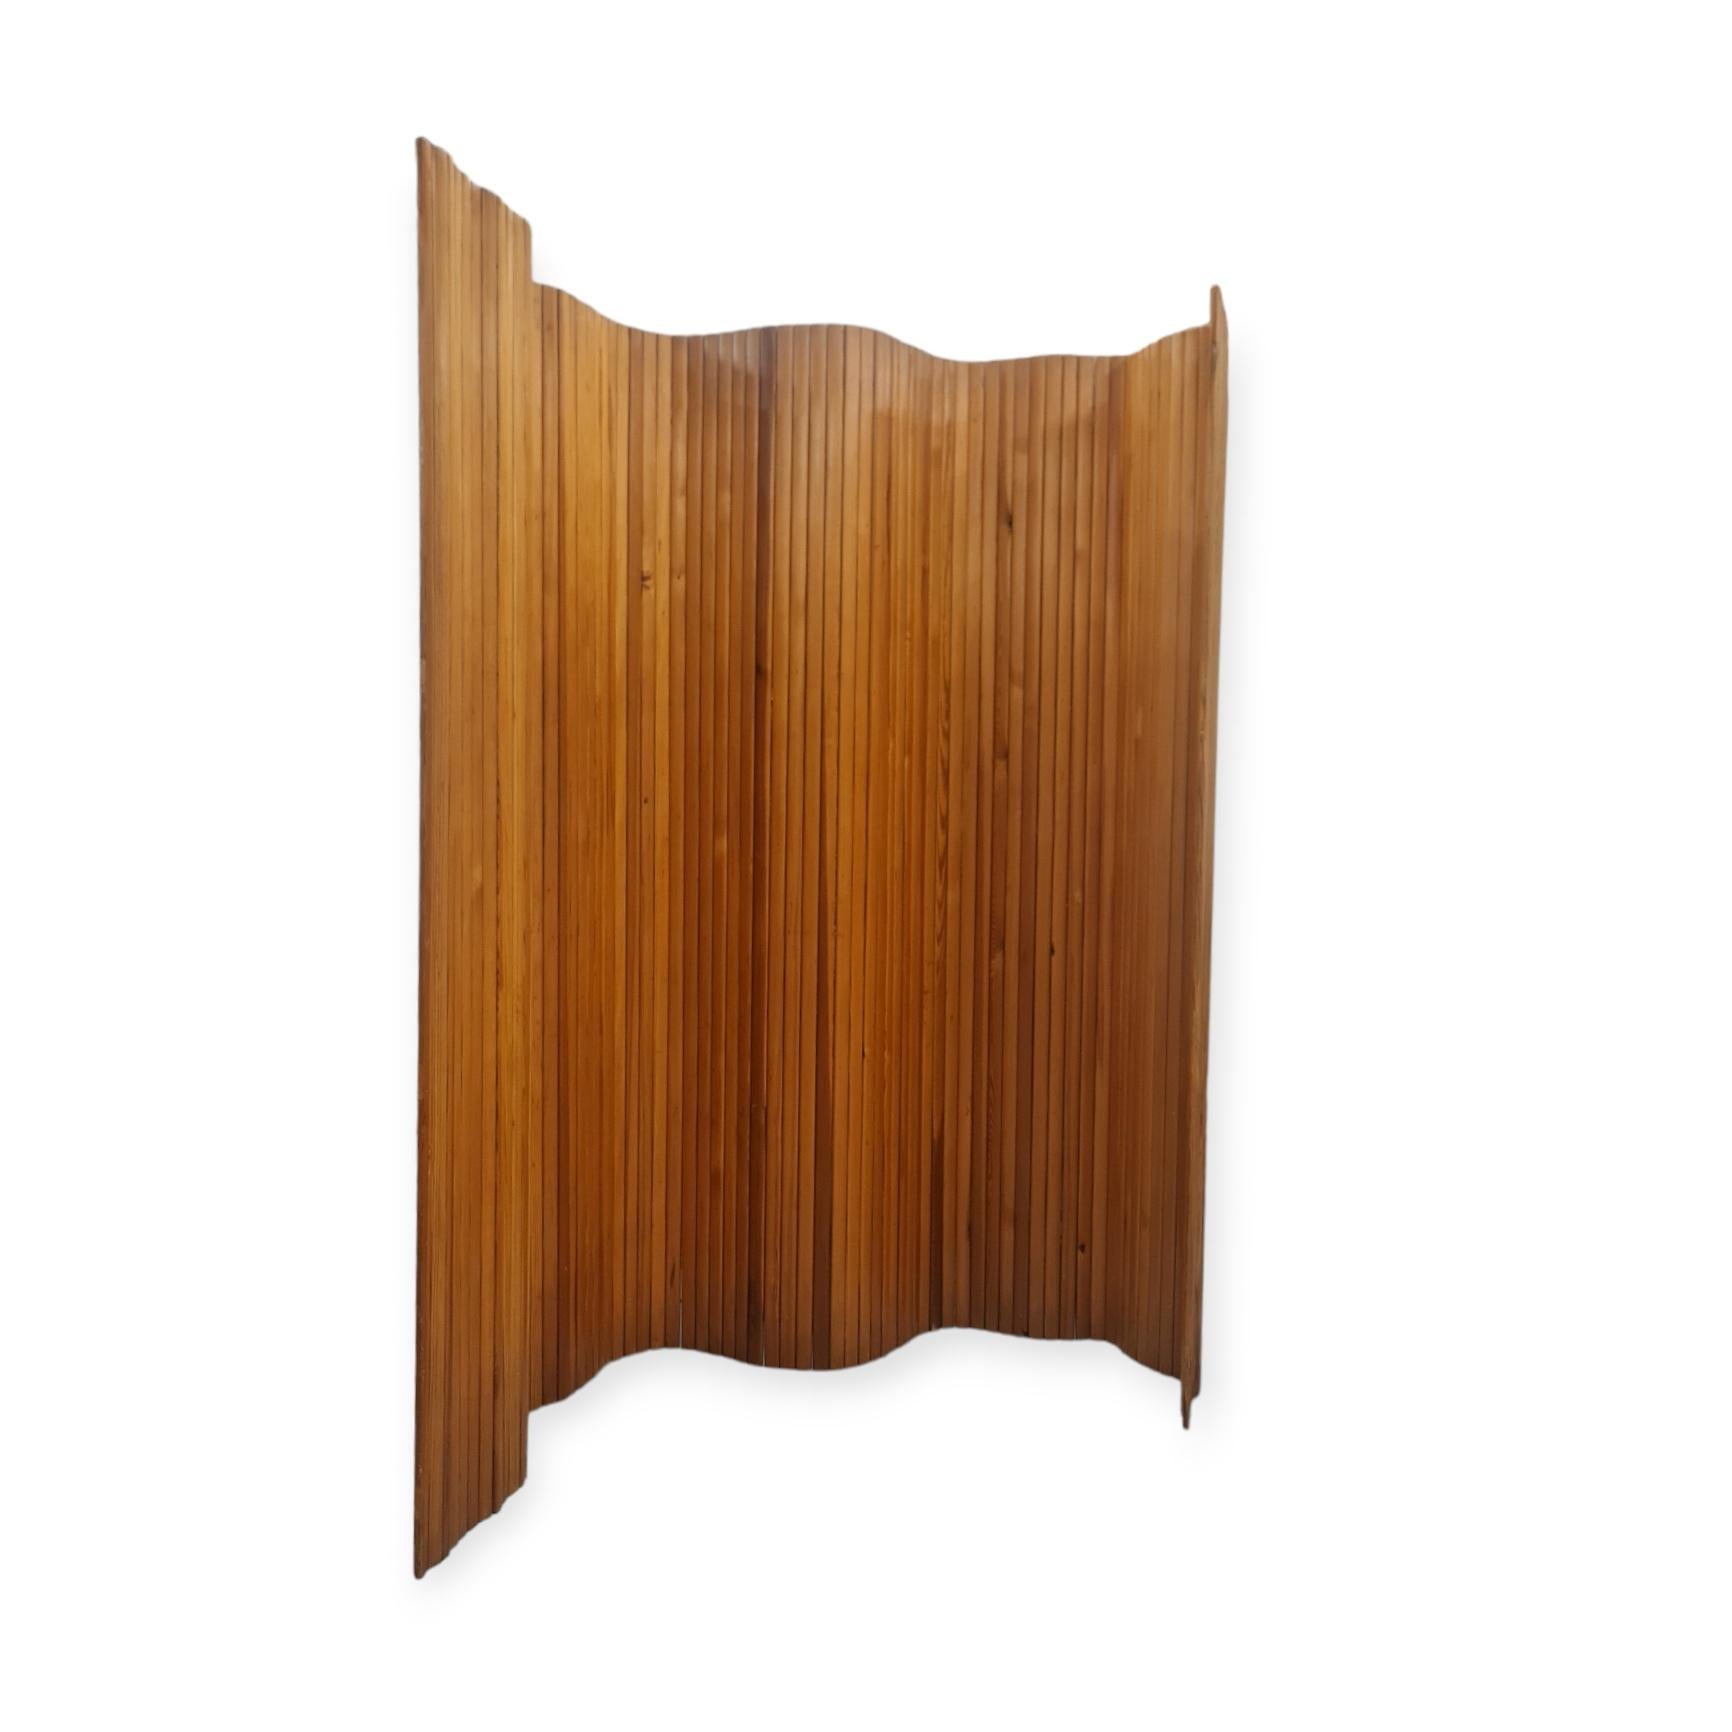 Finnish Alvar Aalto, Wooden Room Divider, Late 1960s, Artek For Sale